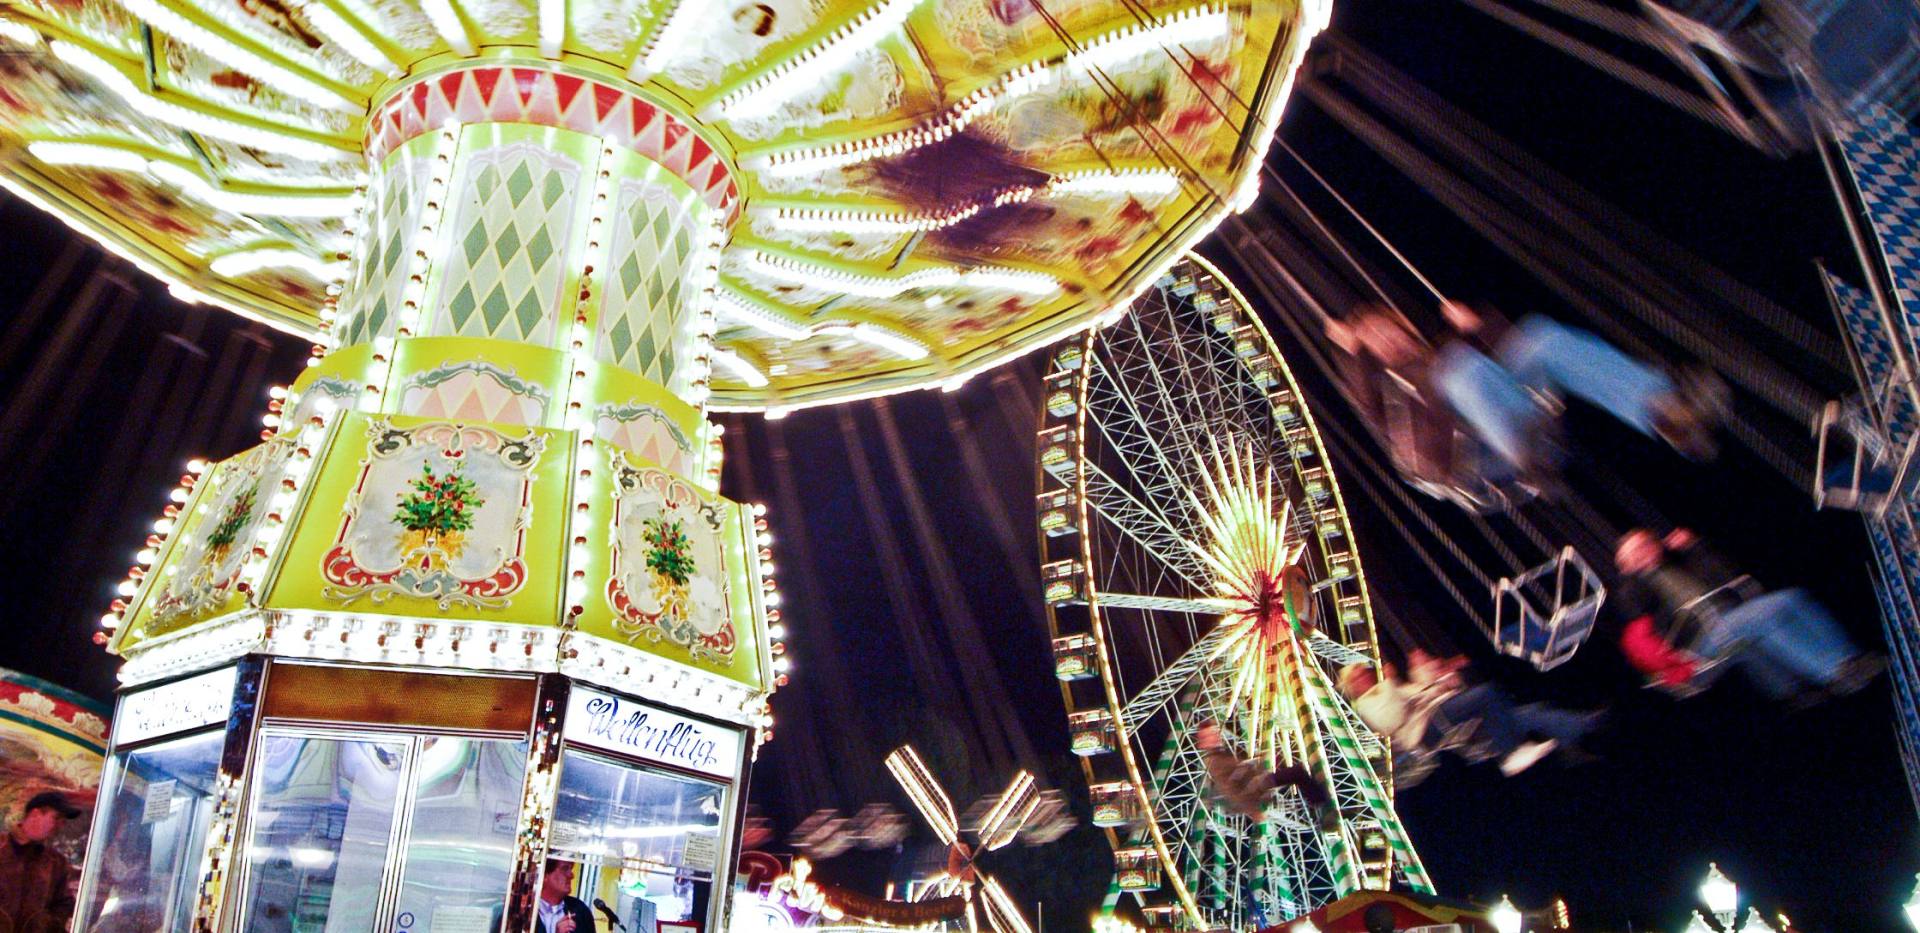 Nachtaufnahme mit beleuchtetem Kettenkarussell und Riesenrad auf dem Oldenburger Kramermarkt.